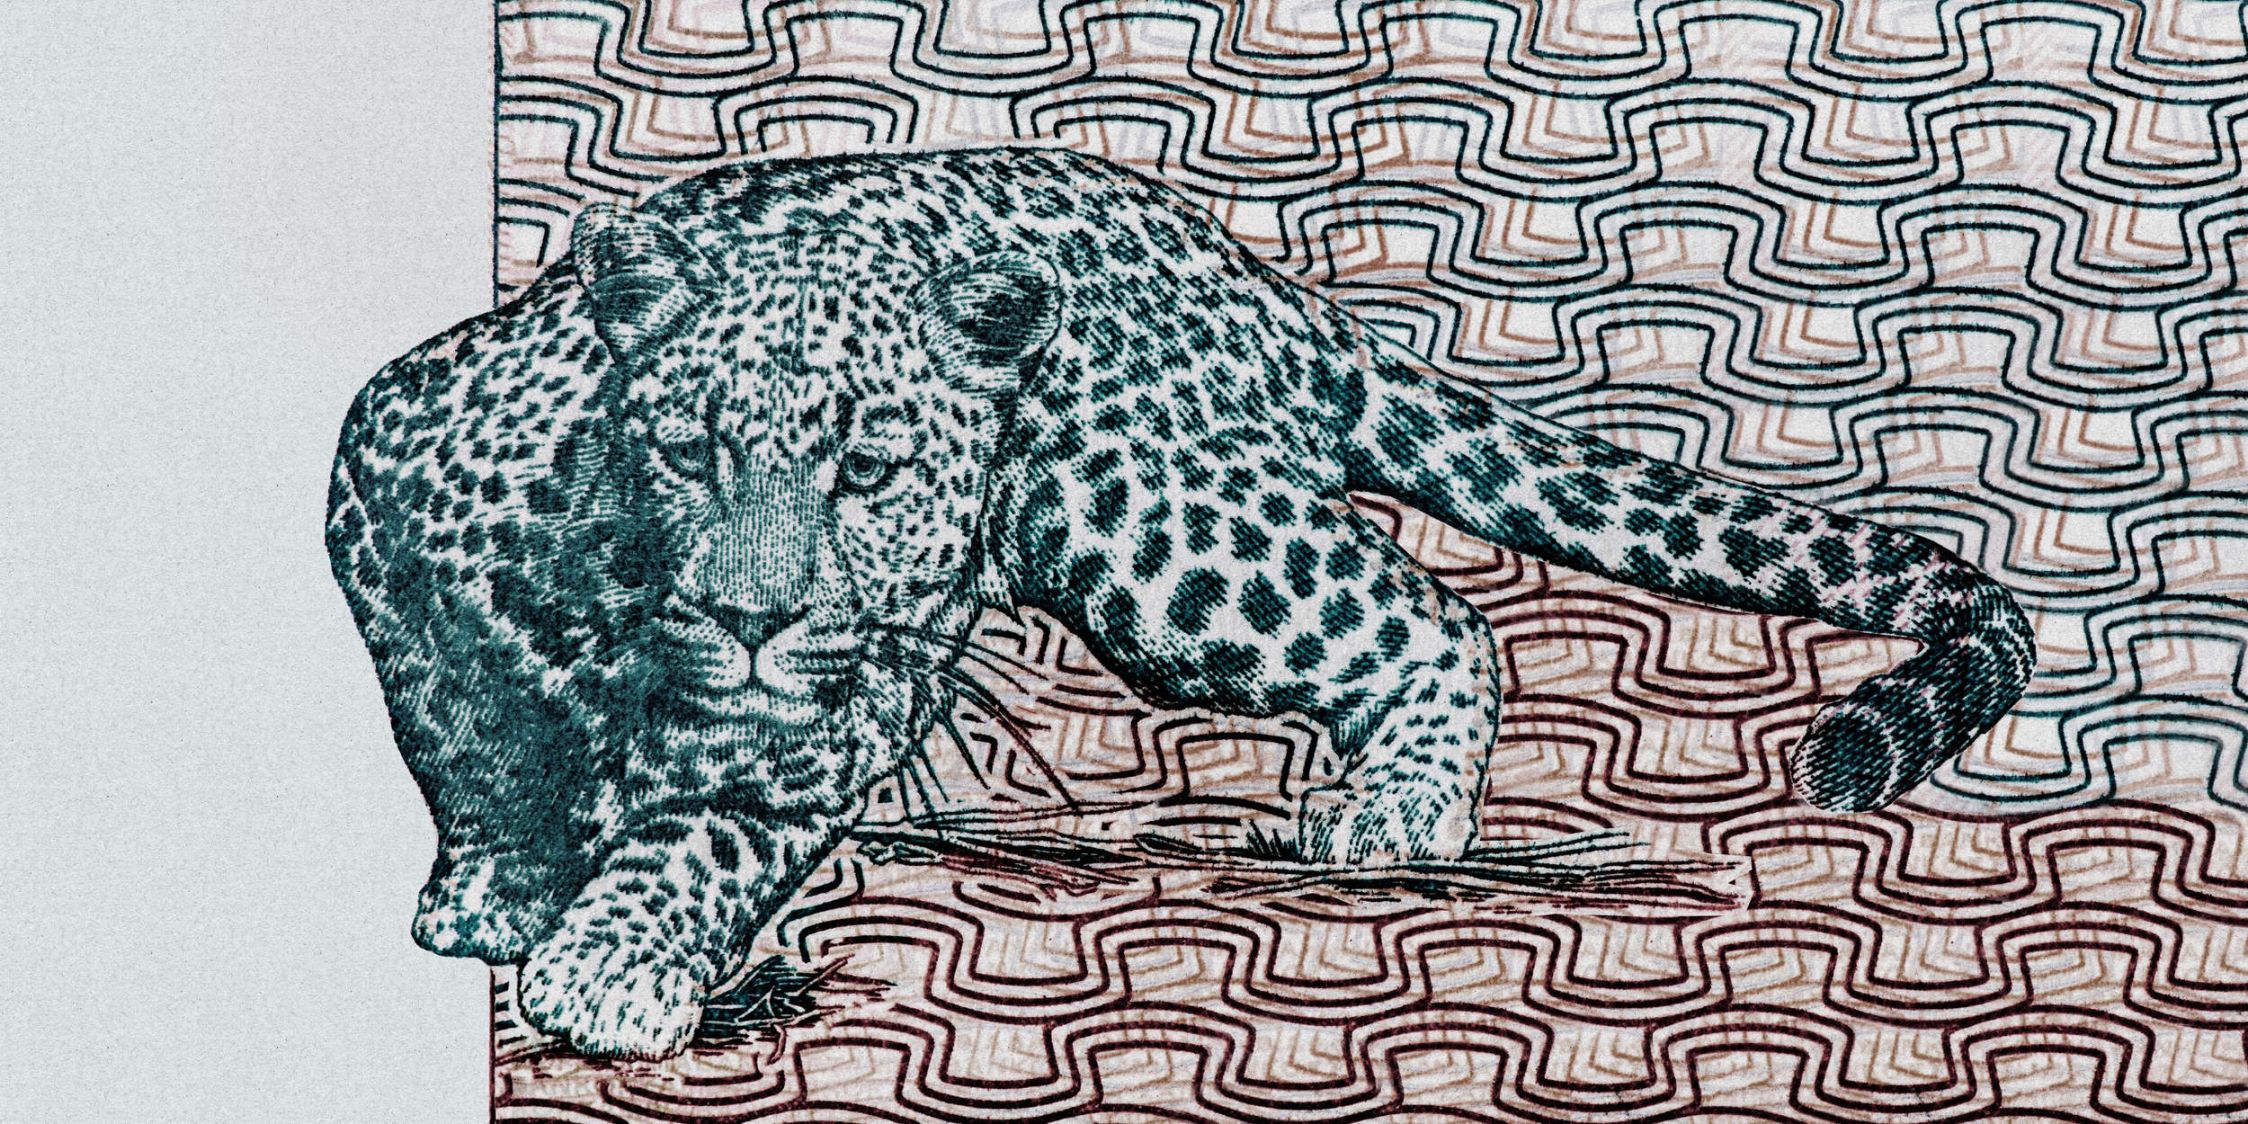             Fotomurali »yugana« - Leopardo davanti a un motivo astratto - Natura qualita consistenza in carta kraft | Materiali non tessuto liscio, leggermente perlato e scintillante
        